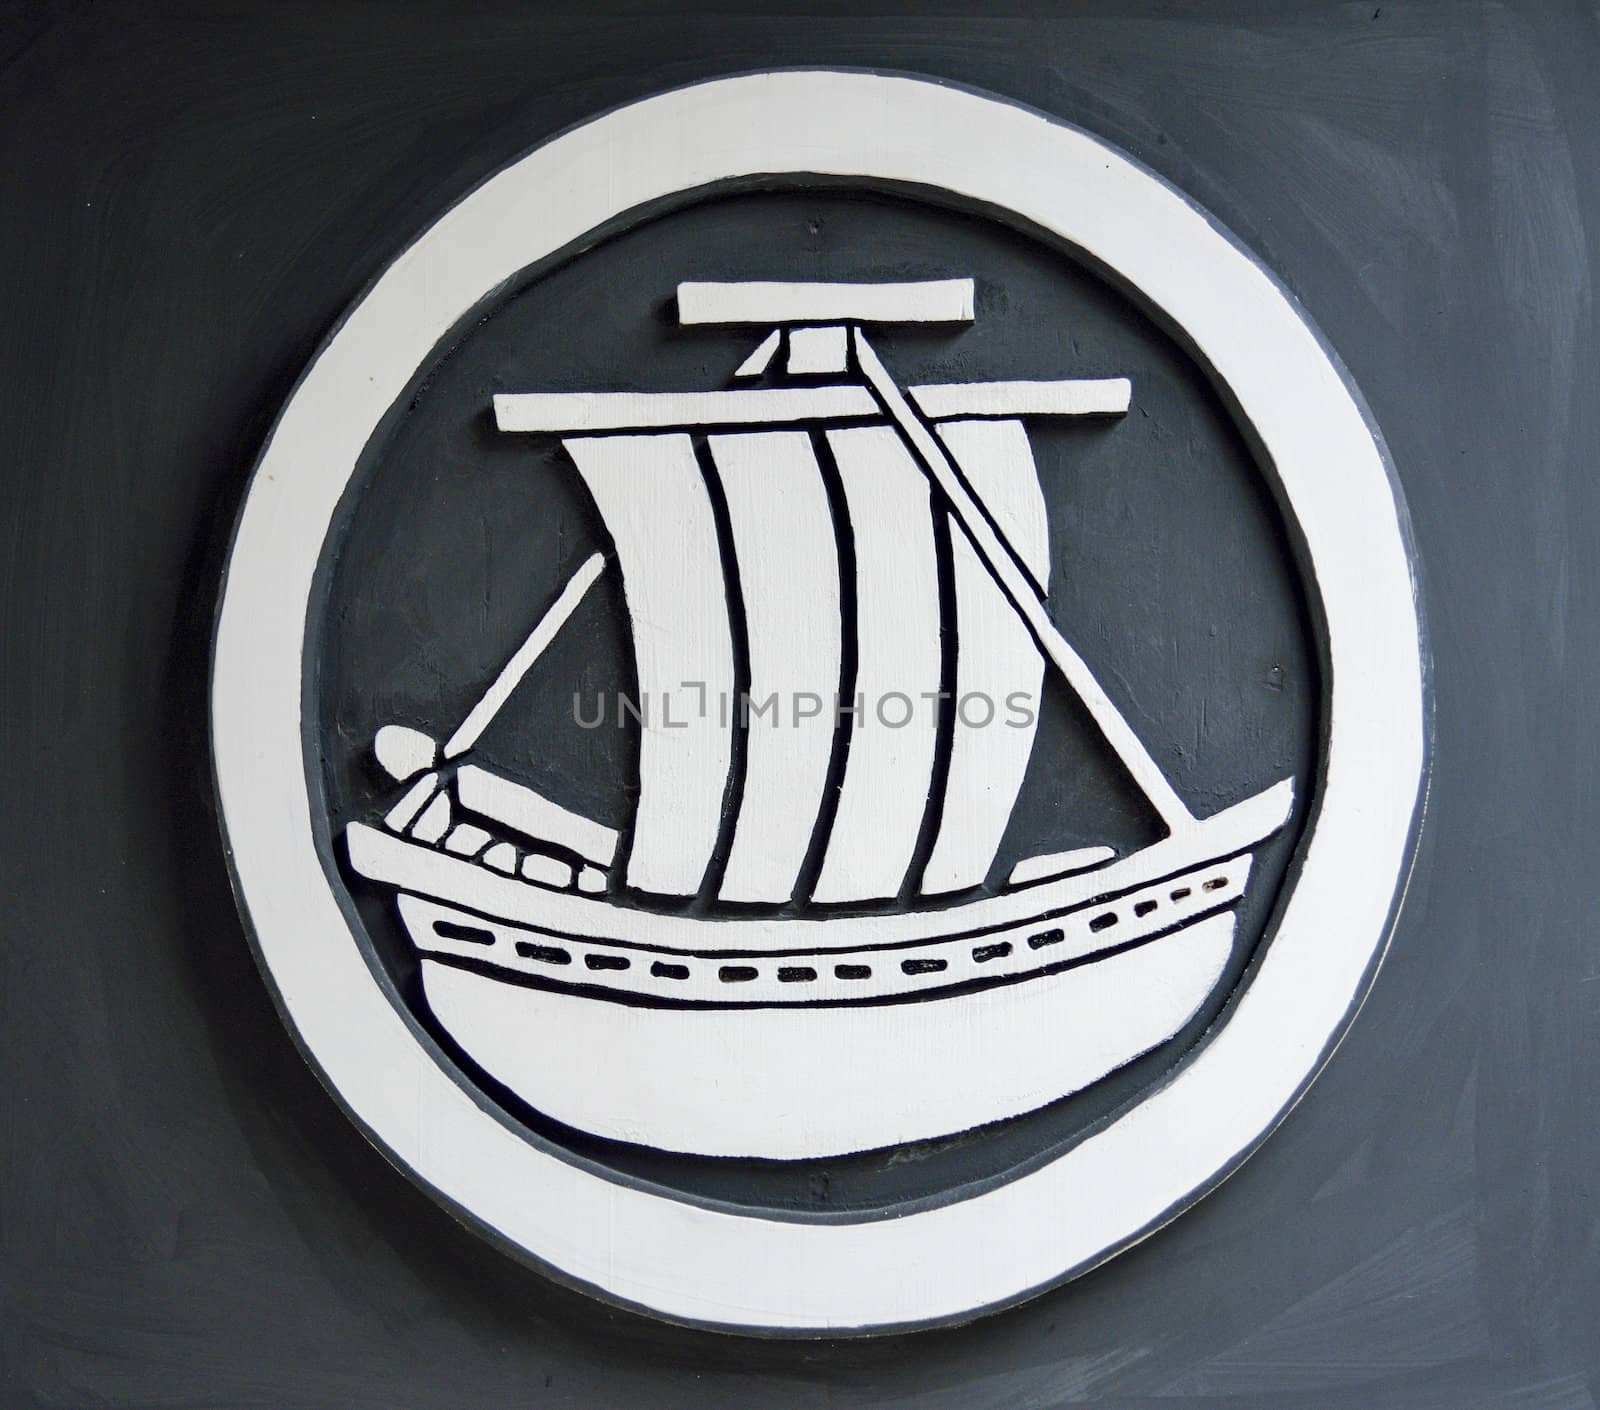 Boat symbol on the wall by gjeerawut